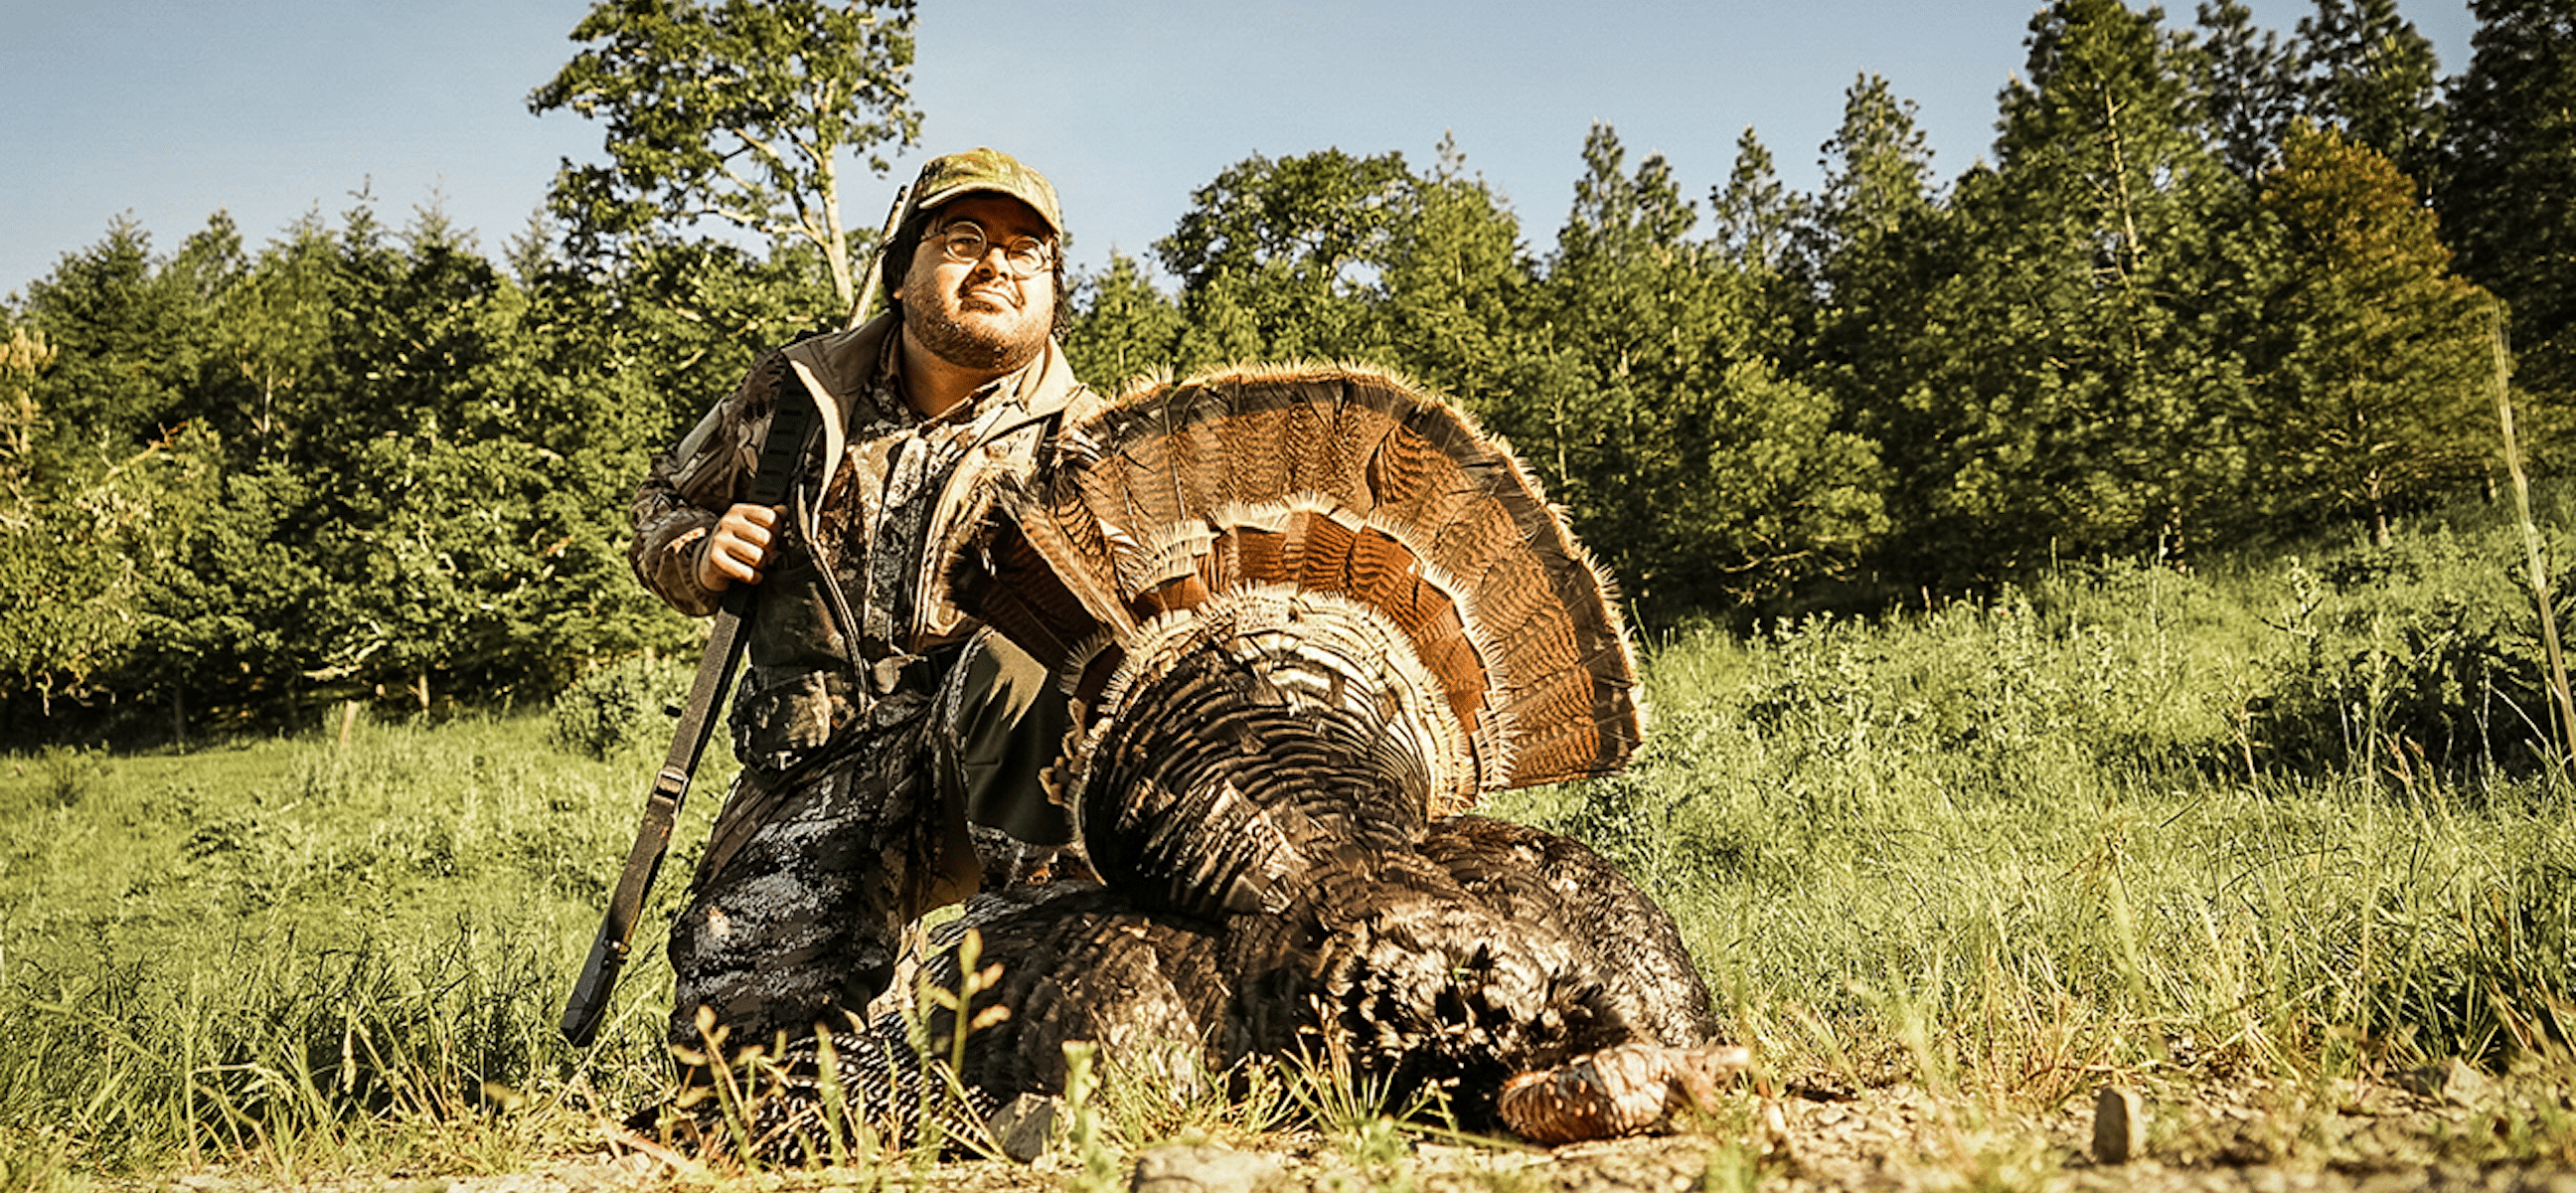 Turkey hunting in Oregon